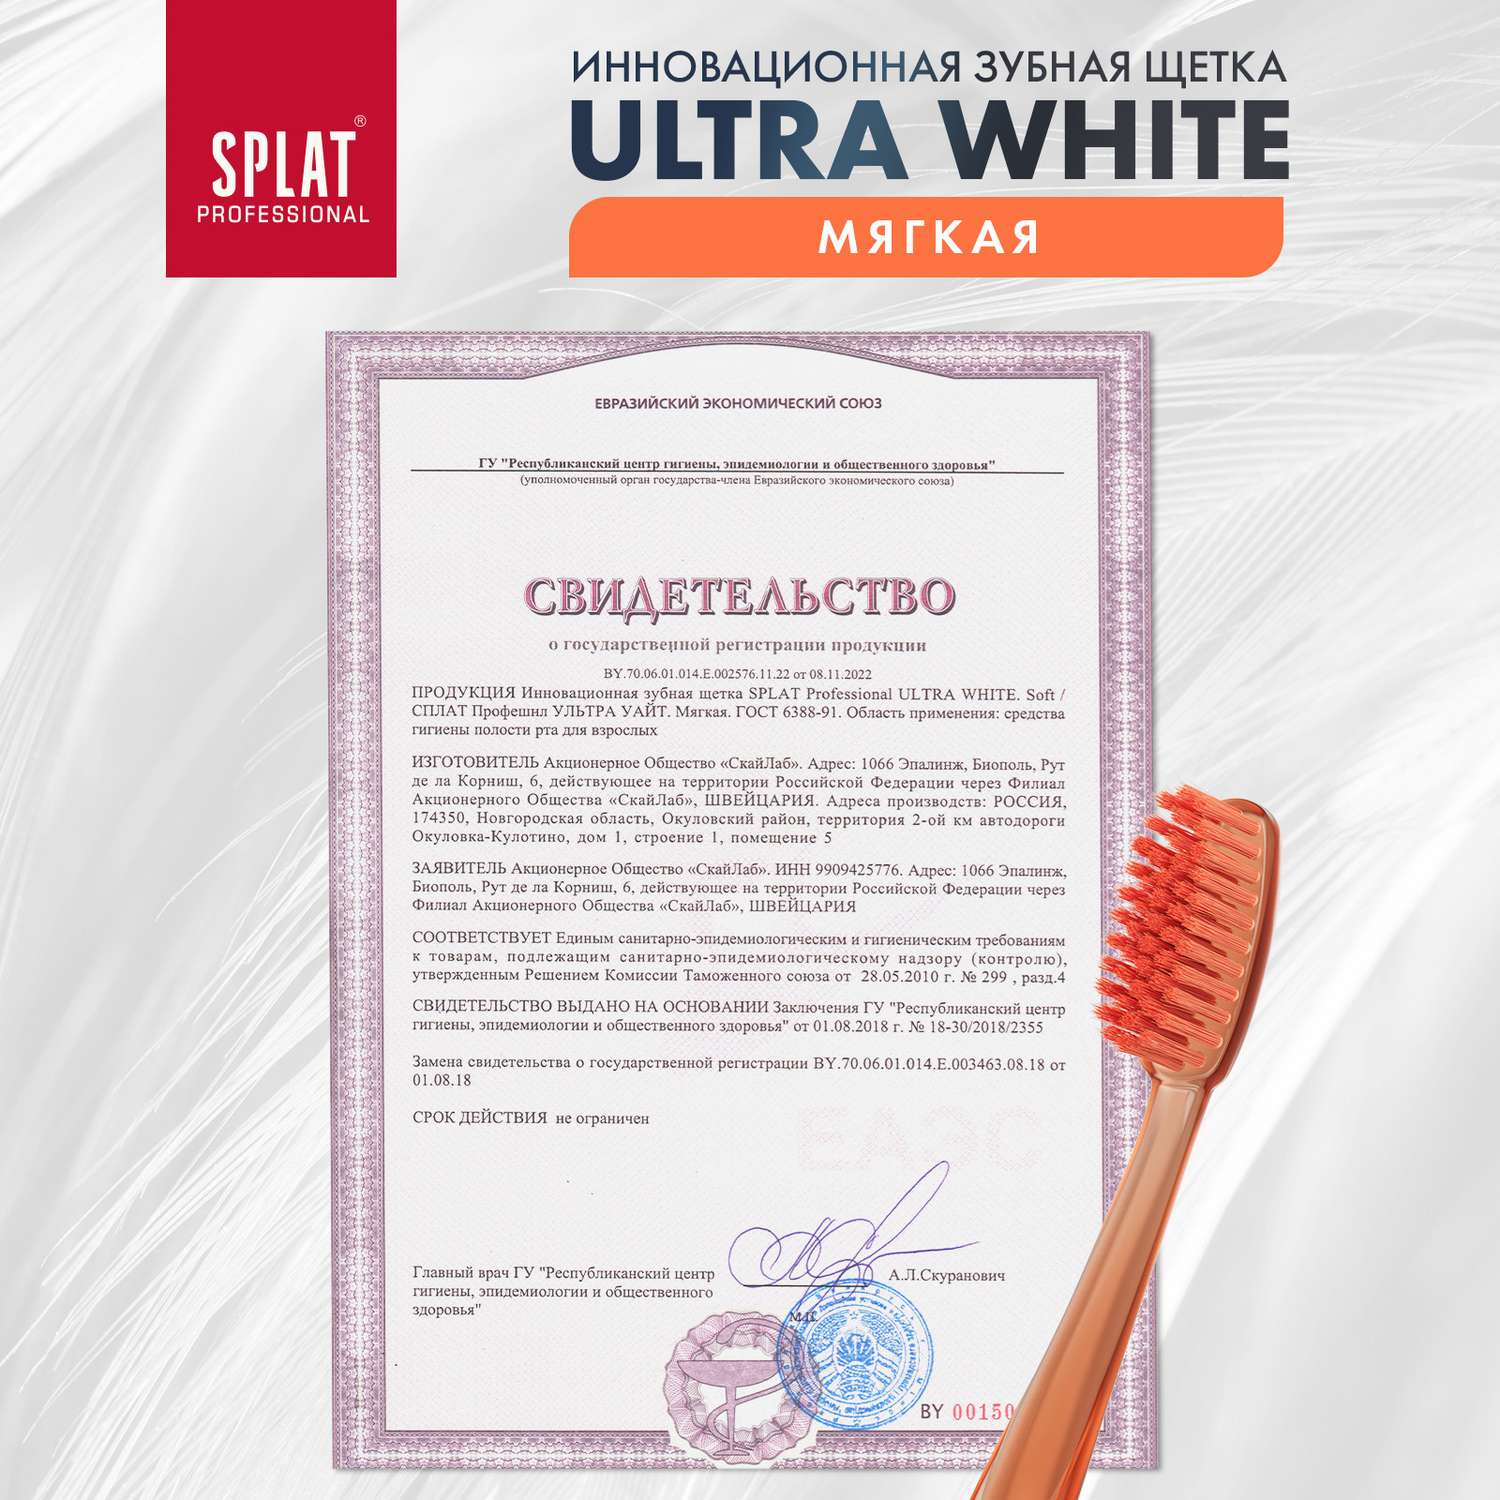 Зубная щетка Splat мягкая Ultra White Ультра Уайт 2 шт - фото 11